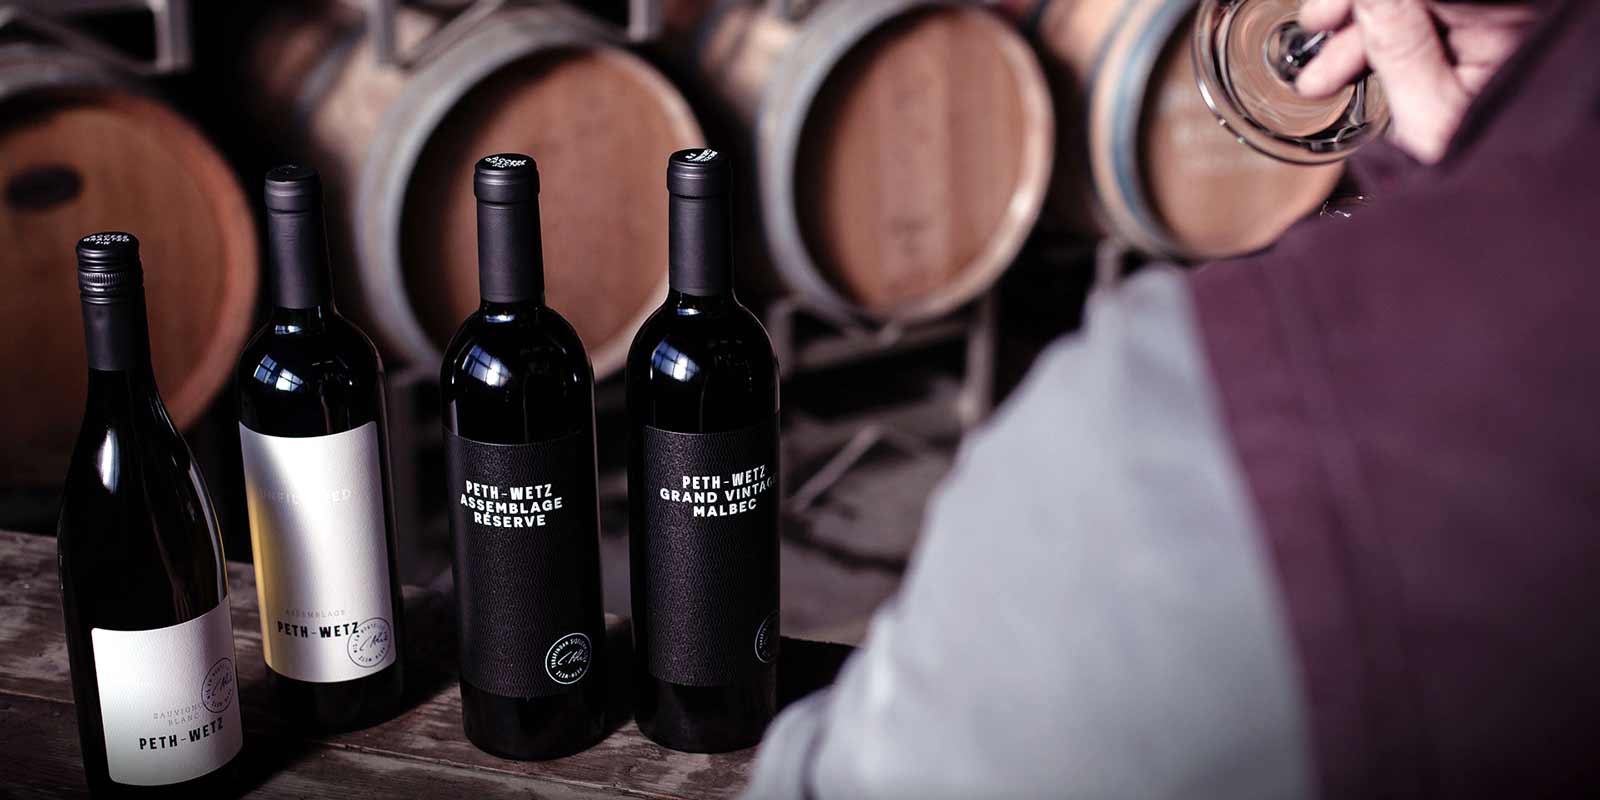 Vina iz Peth-Wetz-a U vinariji Peth-Wetz od 21 hektar u Bermershajmu, Rajna-Hesen, cela porodica je posvecena vinogradarstvu - sada u trecoj generaciji.